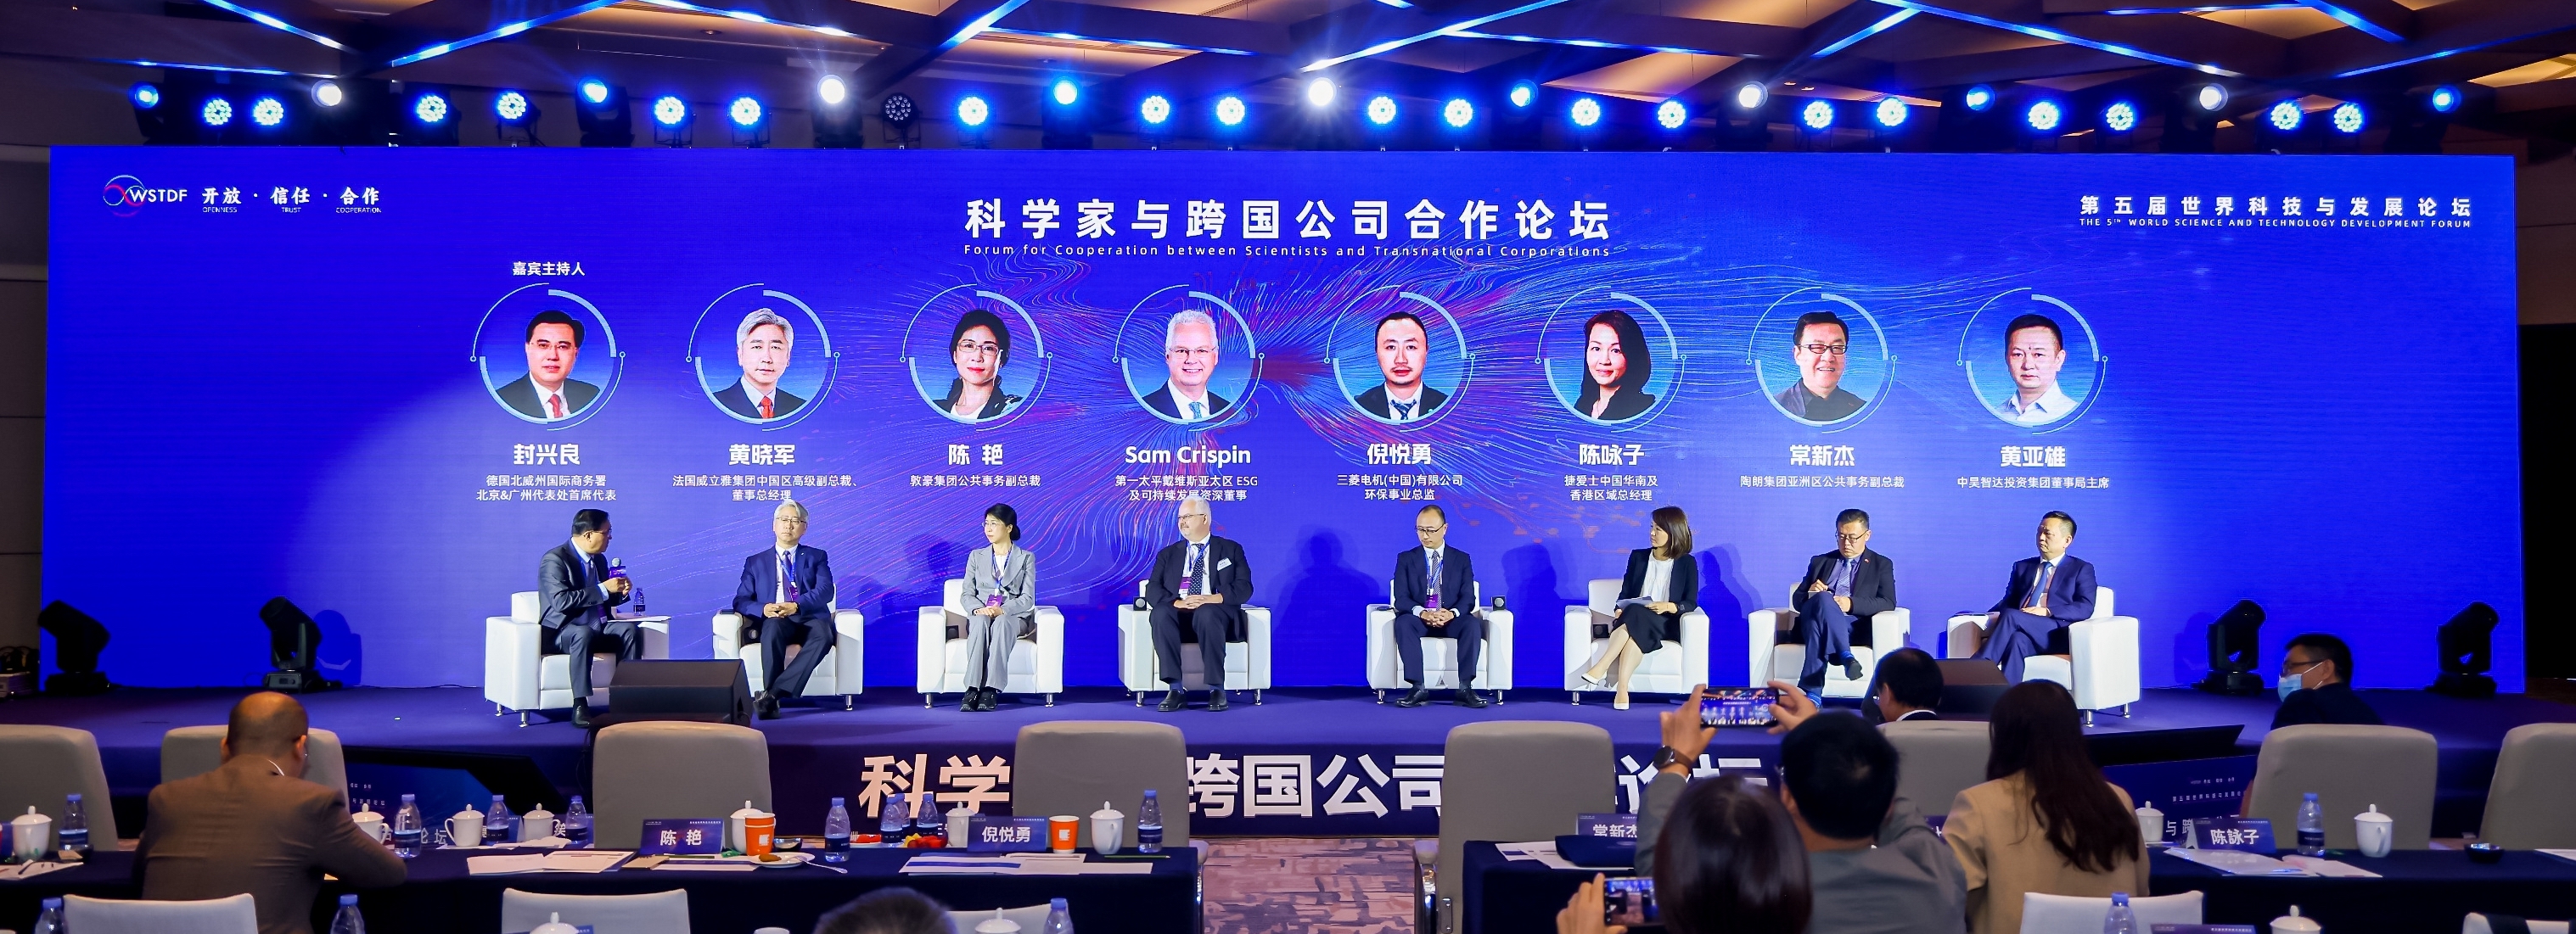 中昊智达集团董事局主席黄亚雄受邀出席第五届世界科技与发展论坛